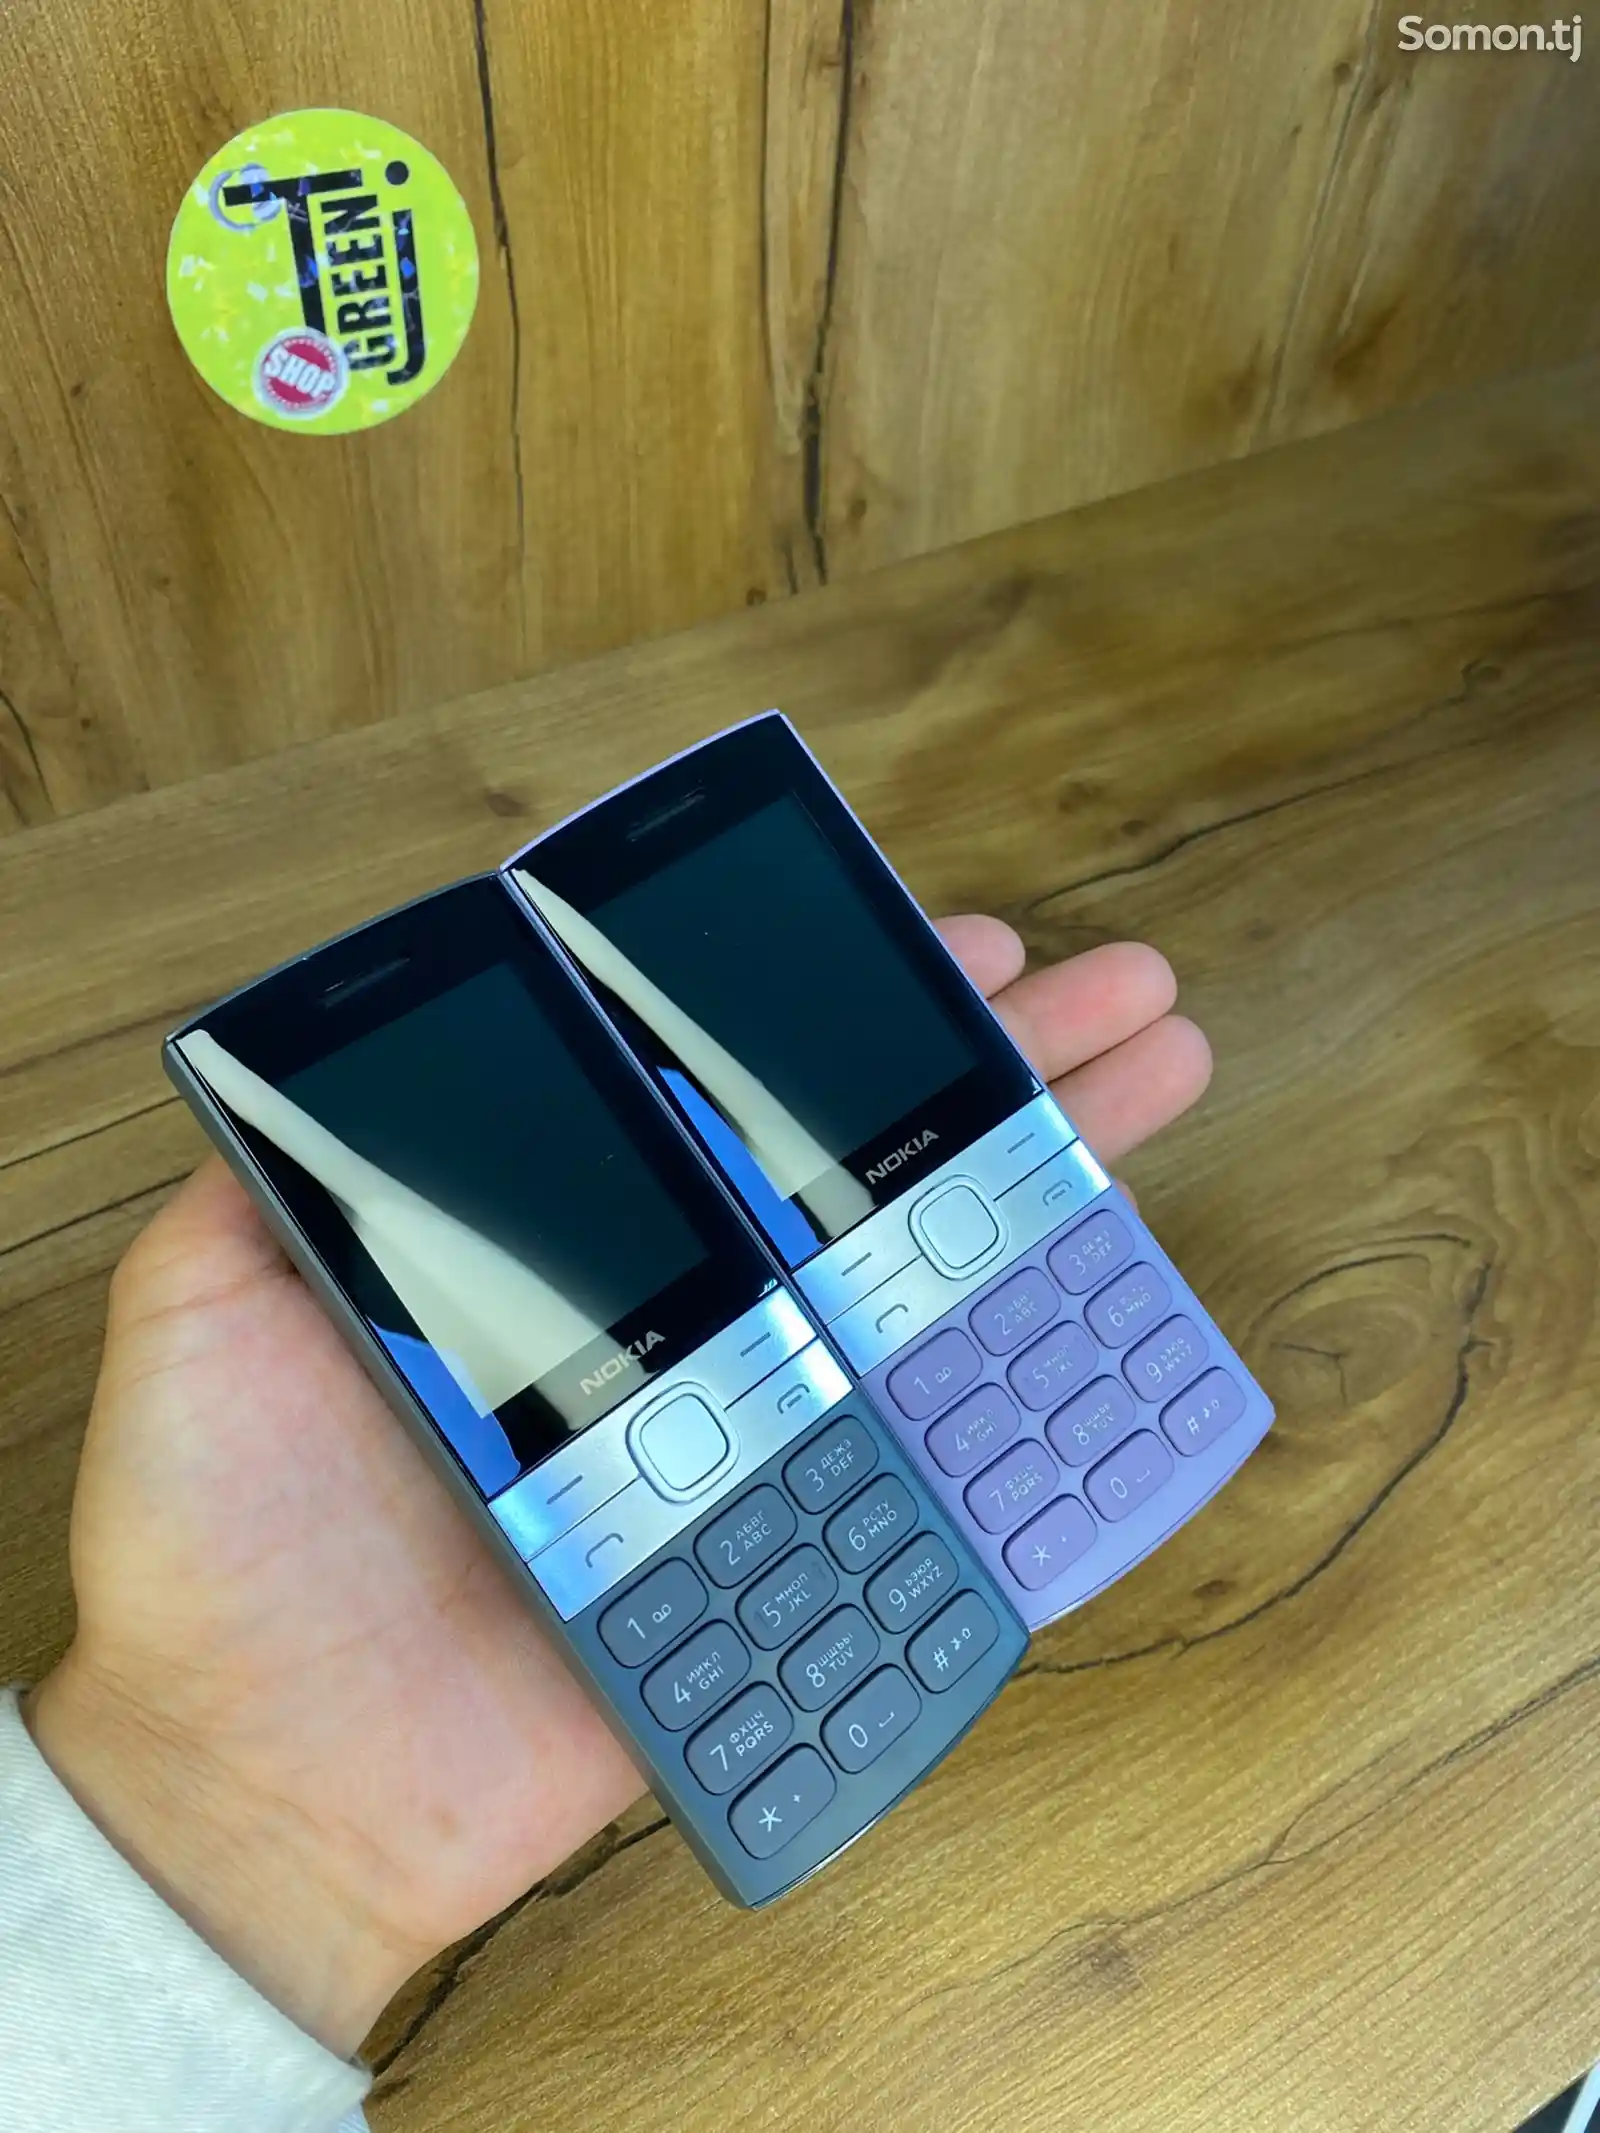 Nokia 150-1